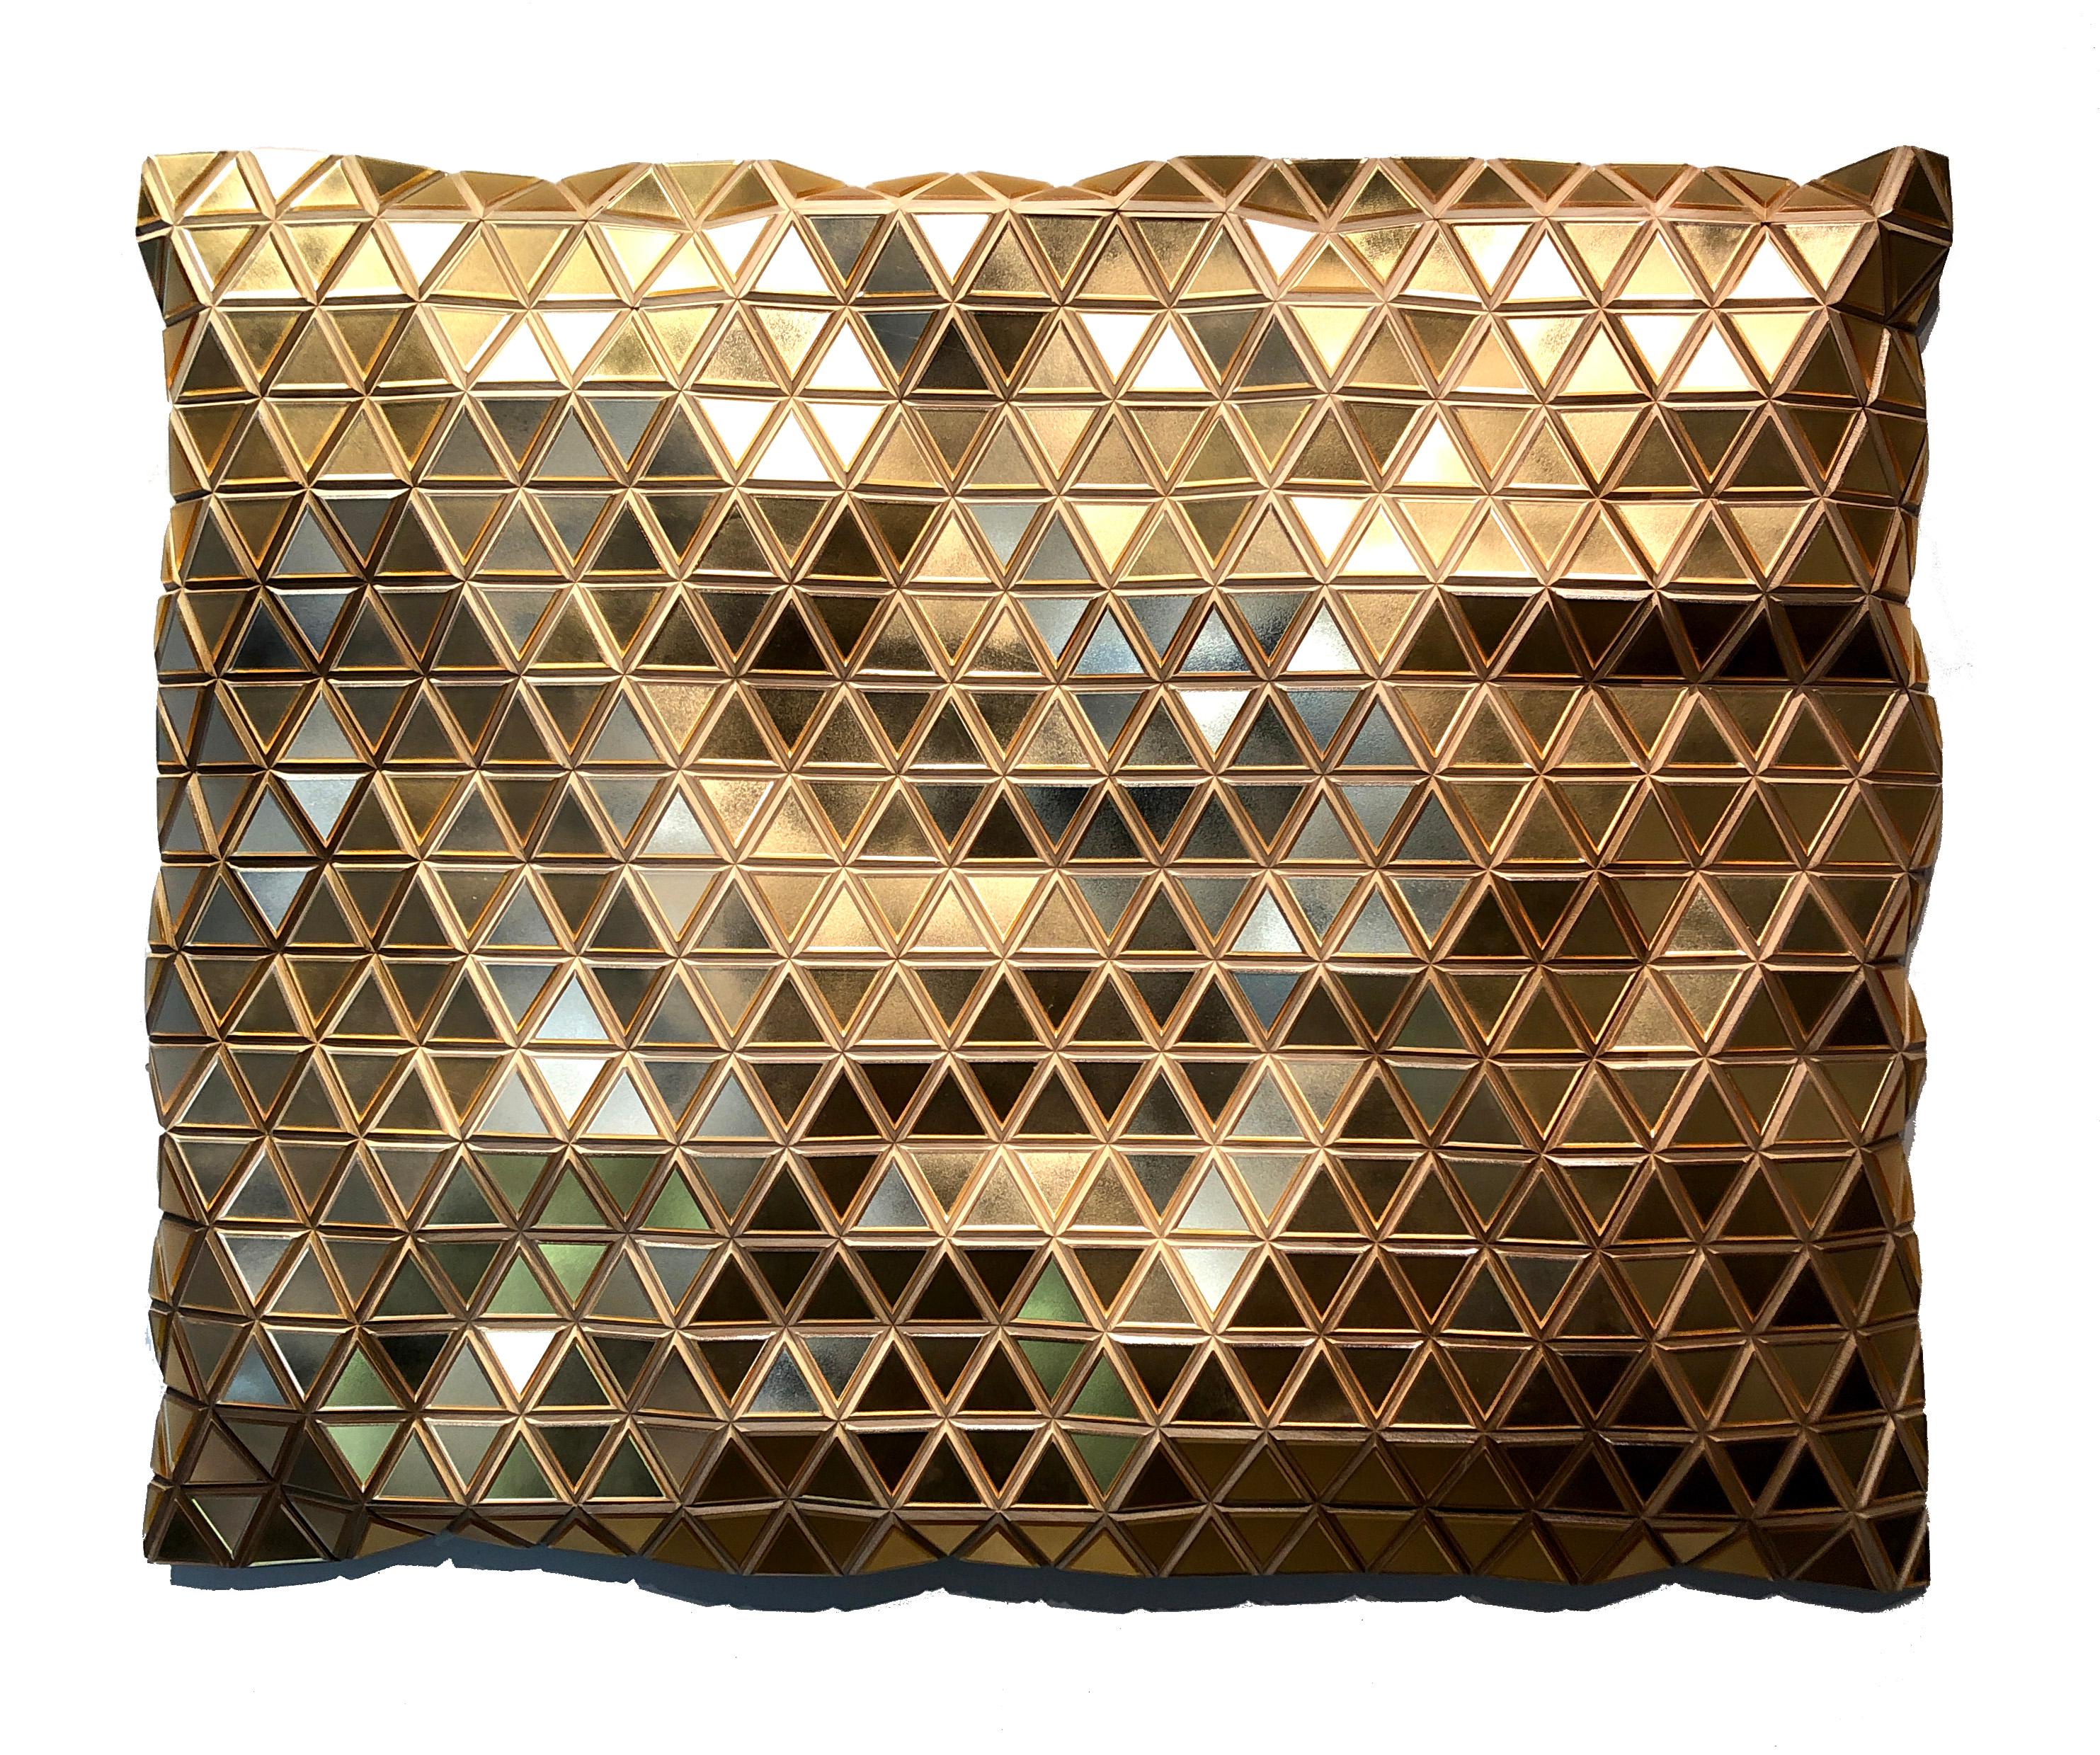 Hugo Urrutia Abstract Sculpture - El Dorado - Sculptural Geometric Abstract Gold Wall Artwork